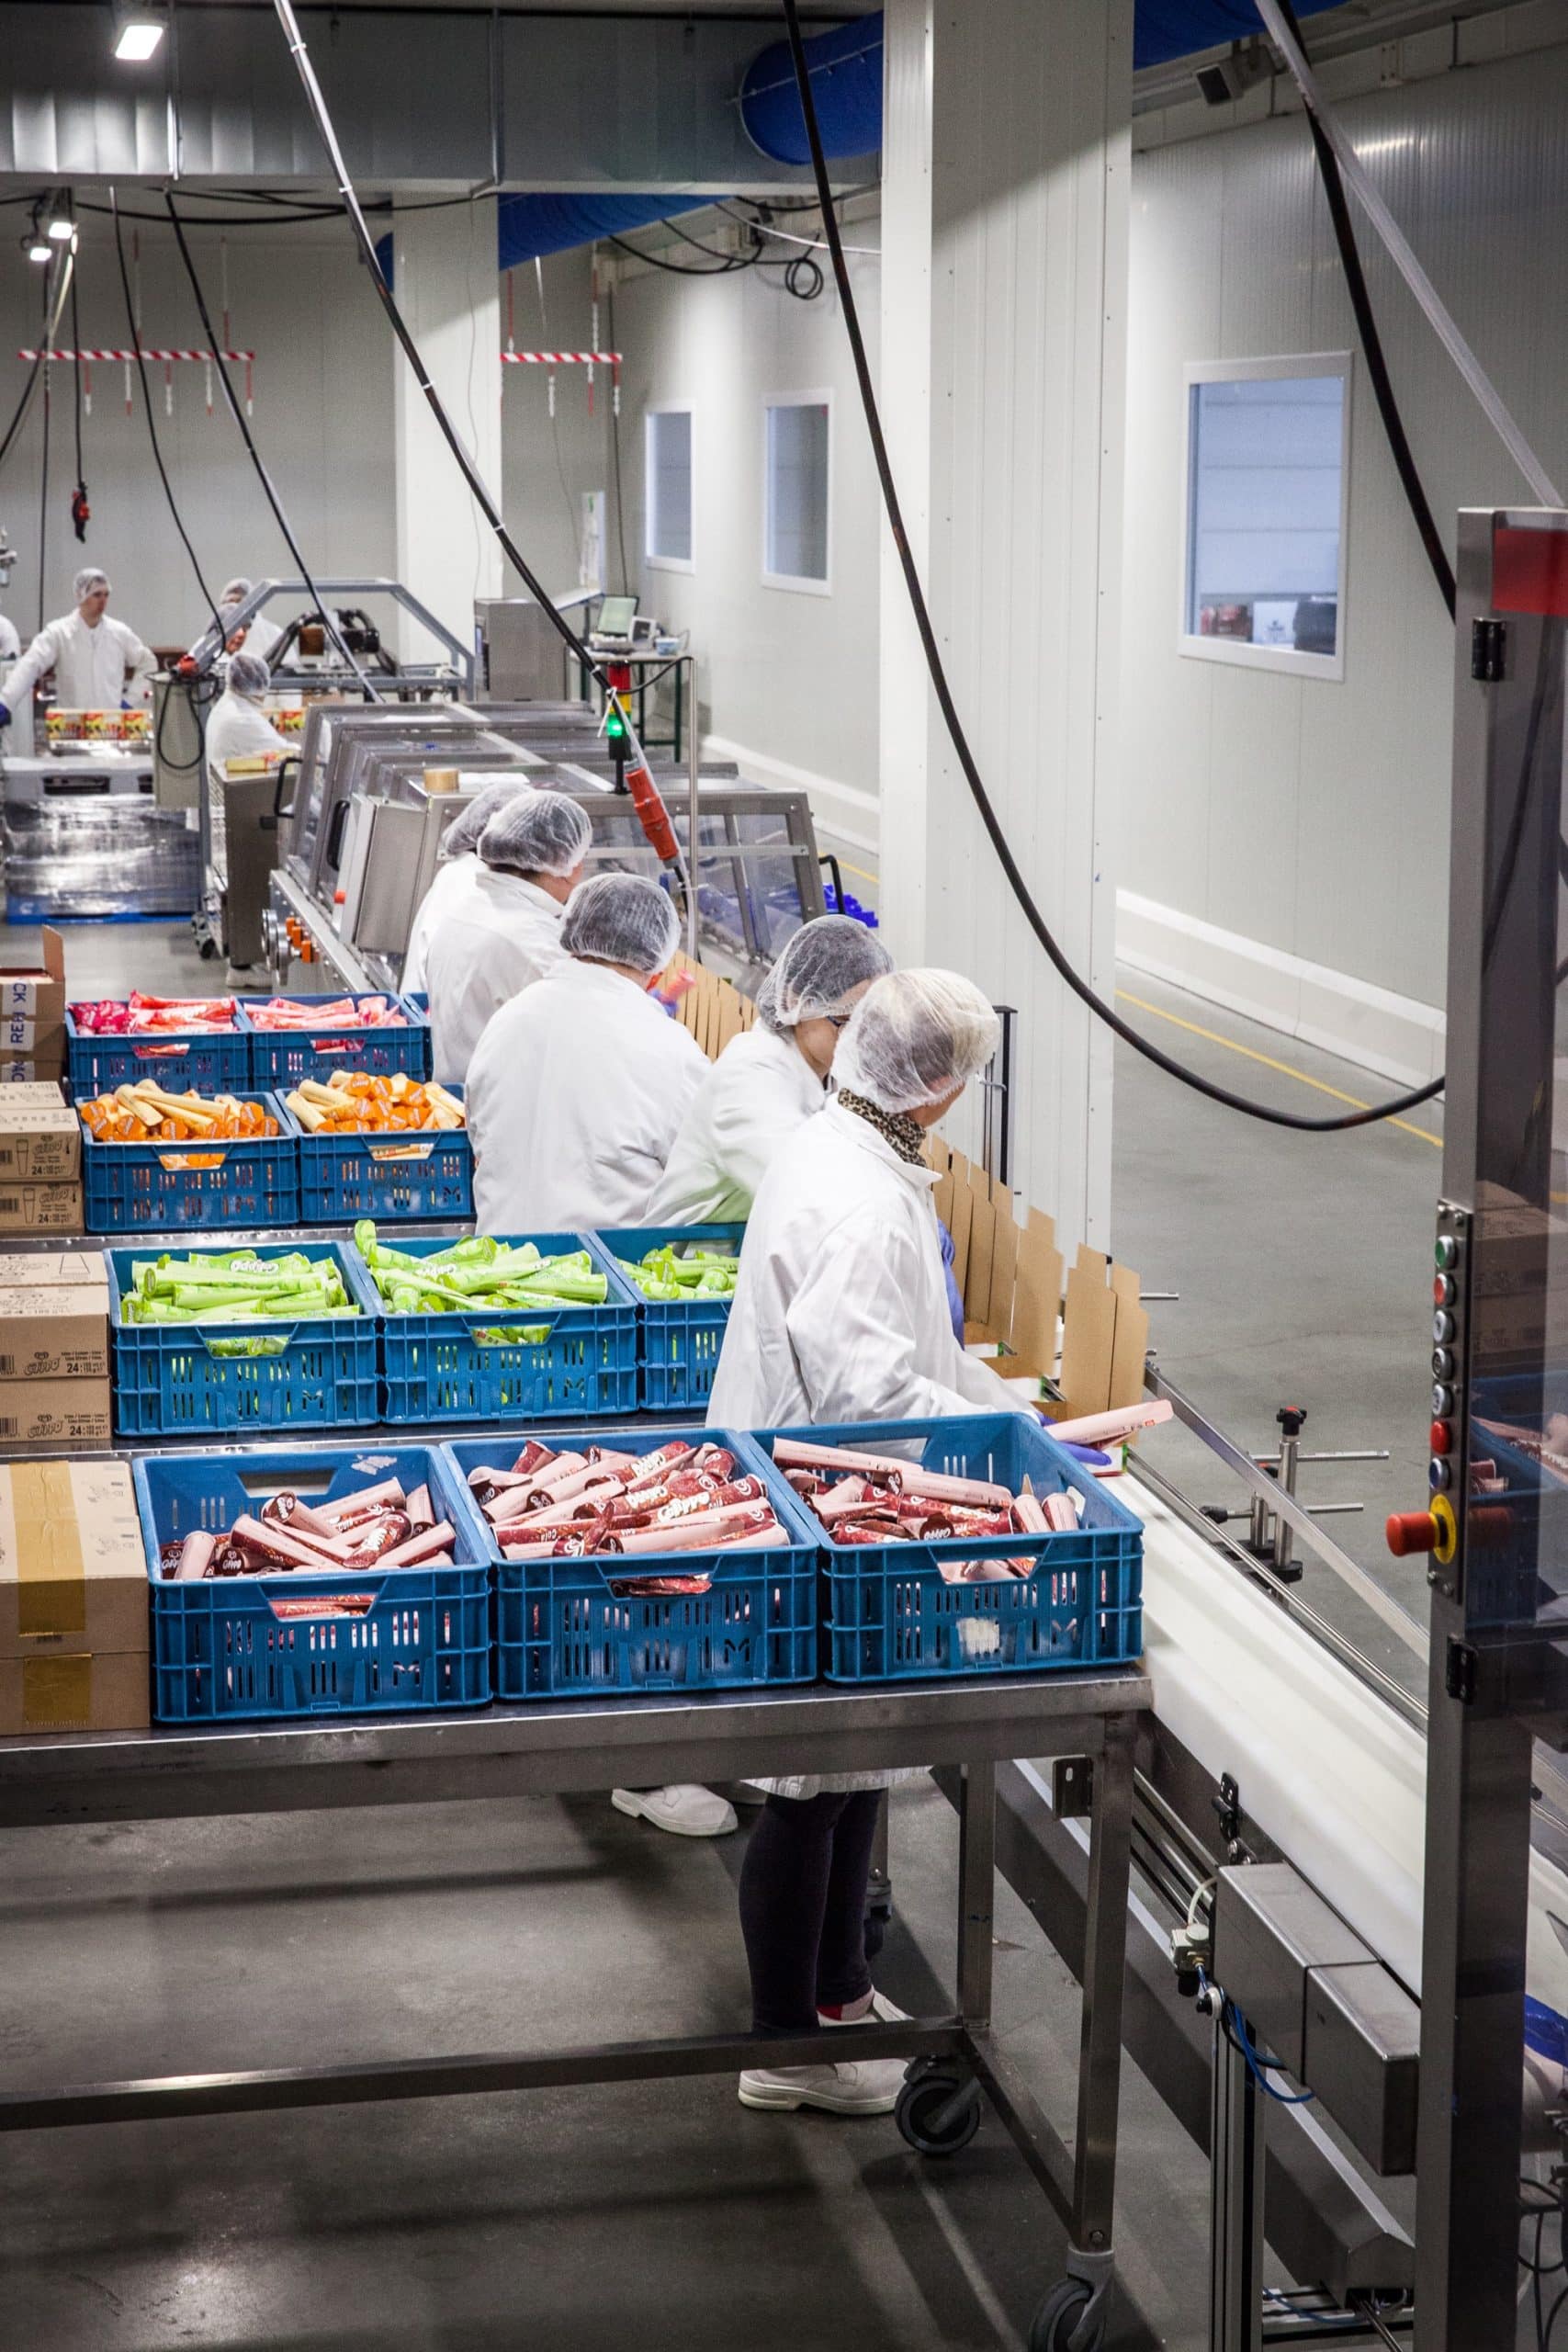 Unsere Förderbänder für die Lebensmittelindustrie in Betrieb bei Calippo. Daneben arbeiten mehrere Personen.